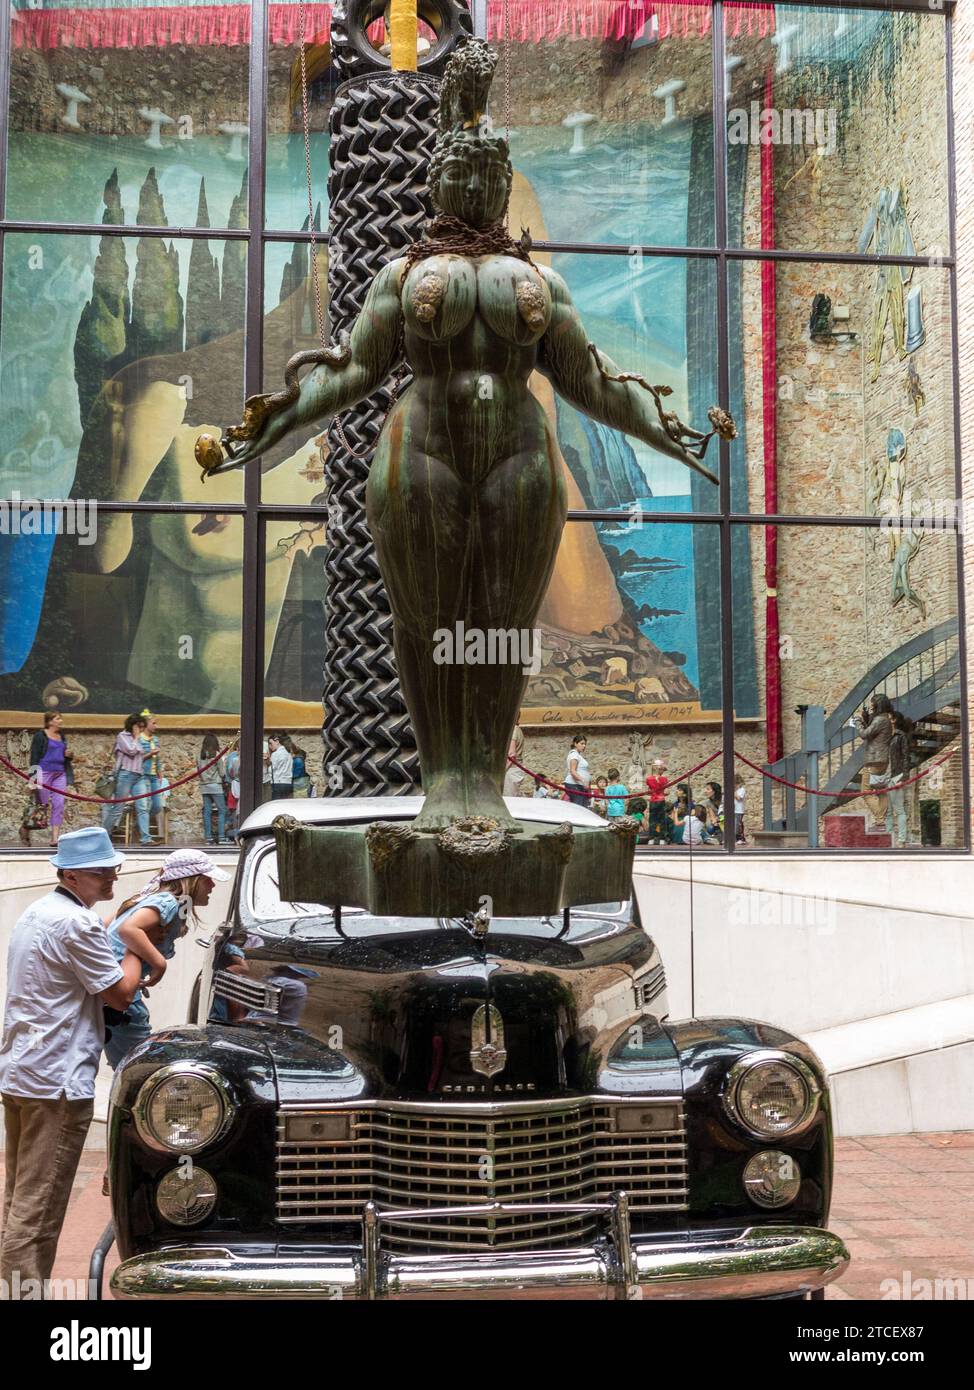 Sculpture d'une femme sur l'avant d'une voiture au Théâtre-Musée Dali. Plaça Gala i Salvador Dalí, 5, 17600 Figueres, Gérone, Espagne Banque D'Images